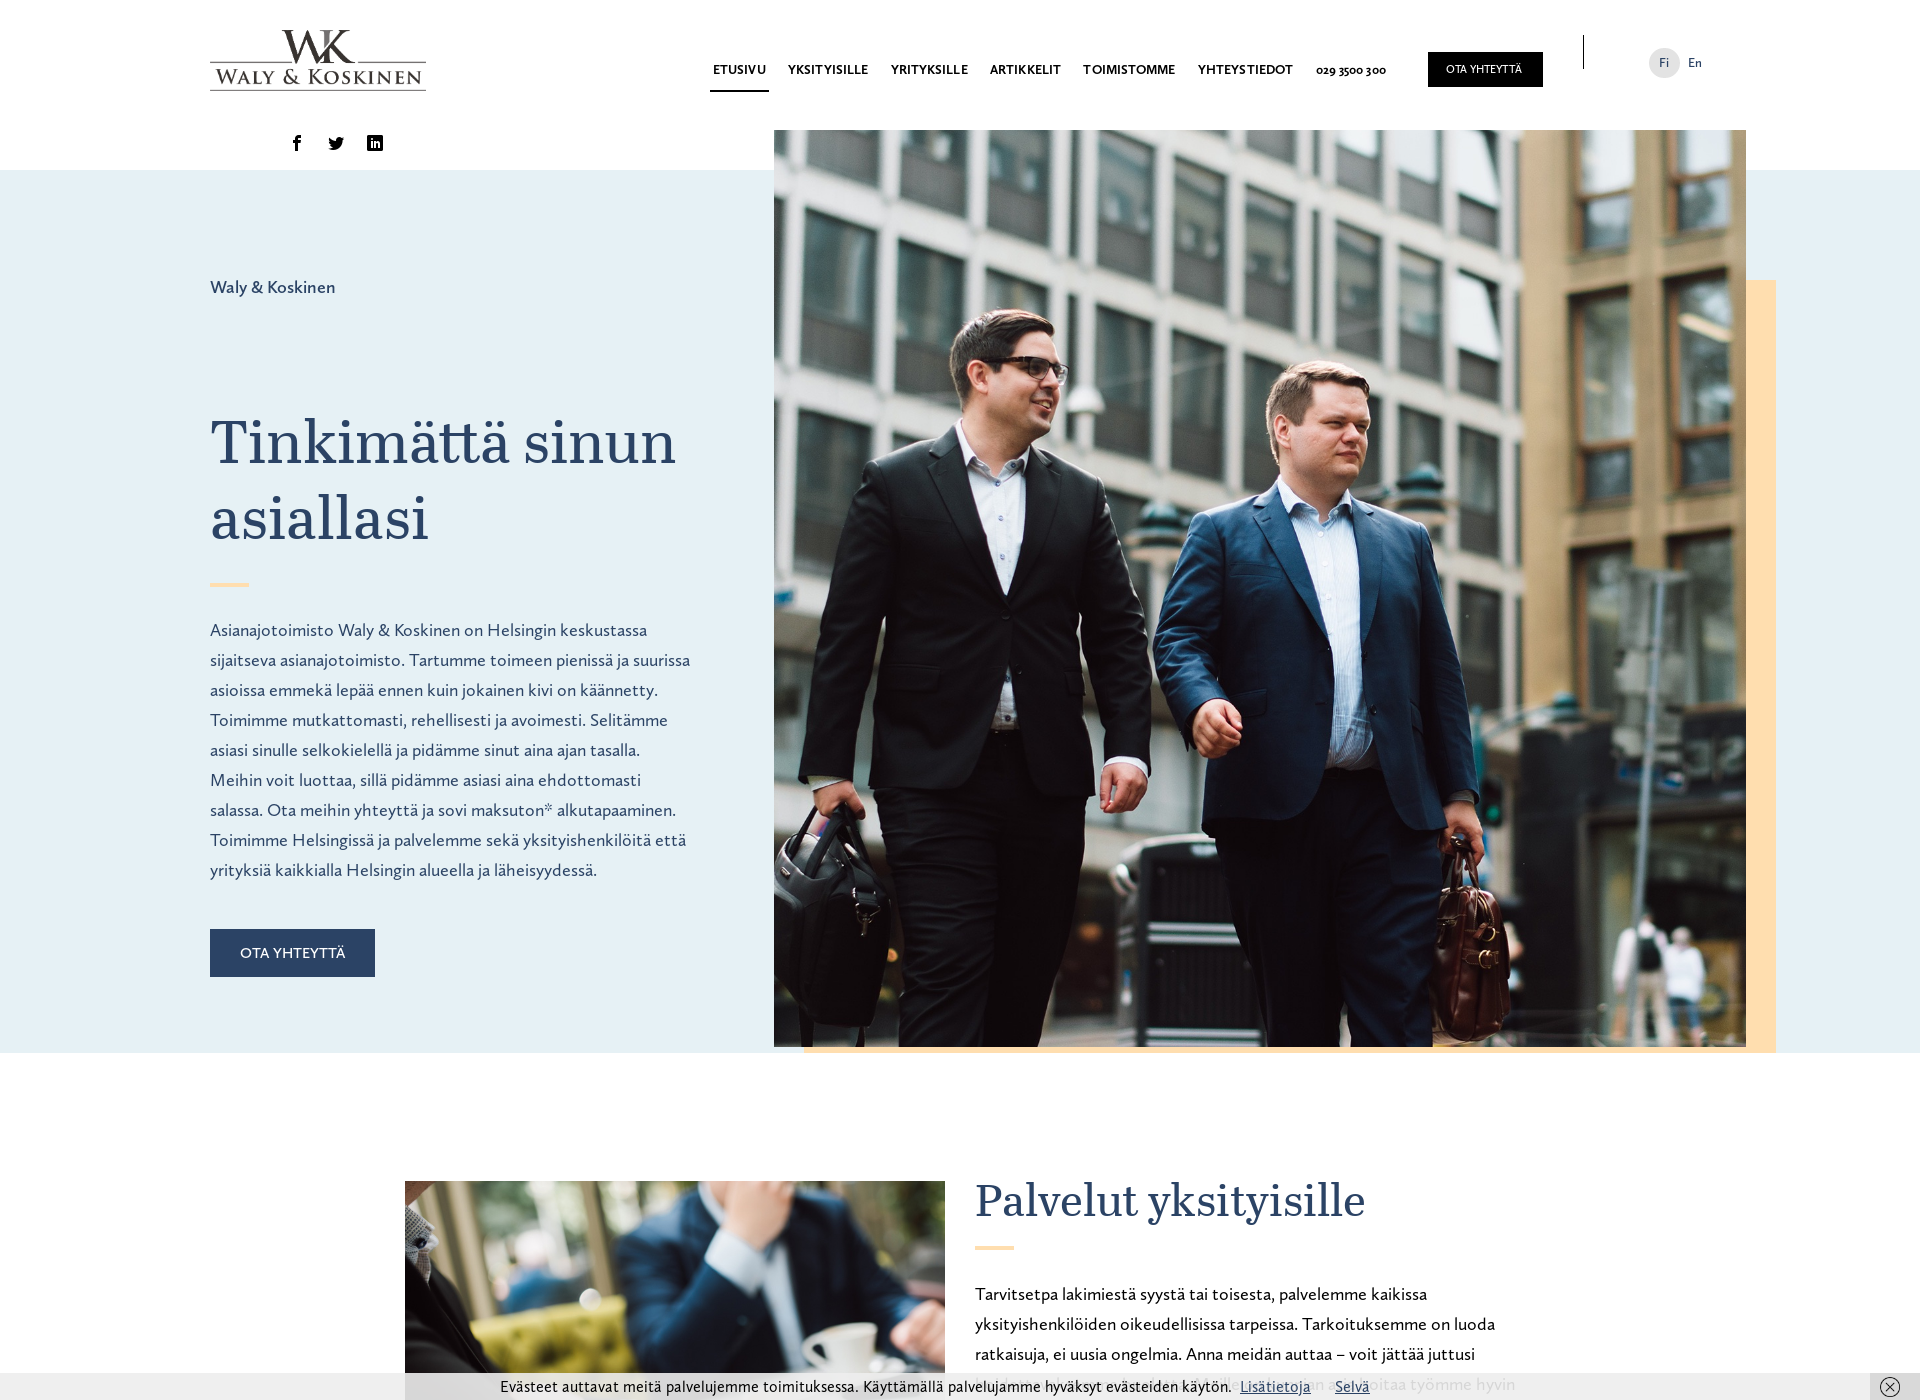 Näyttökuva wlaki.fi